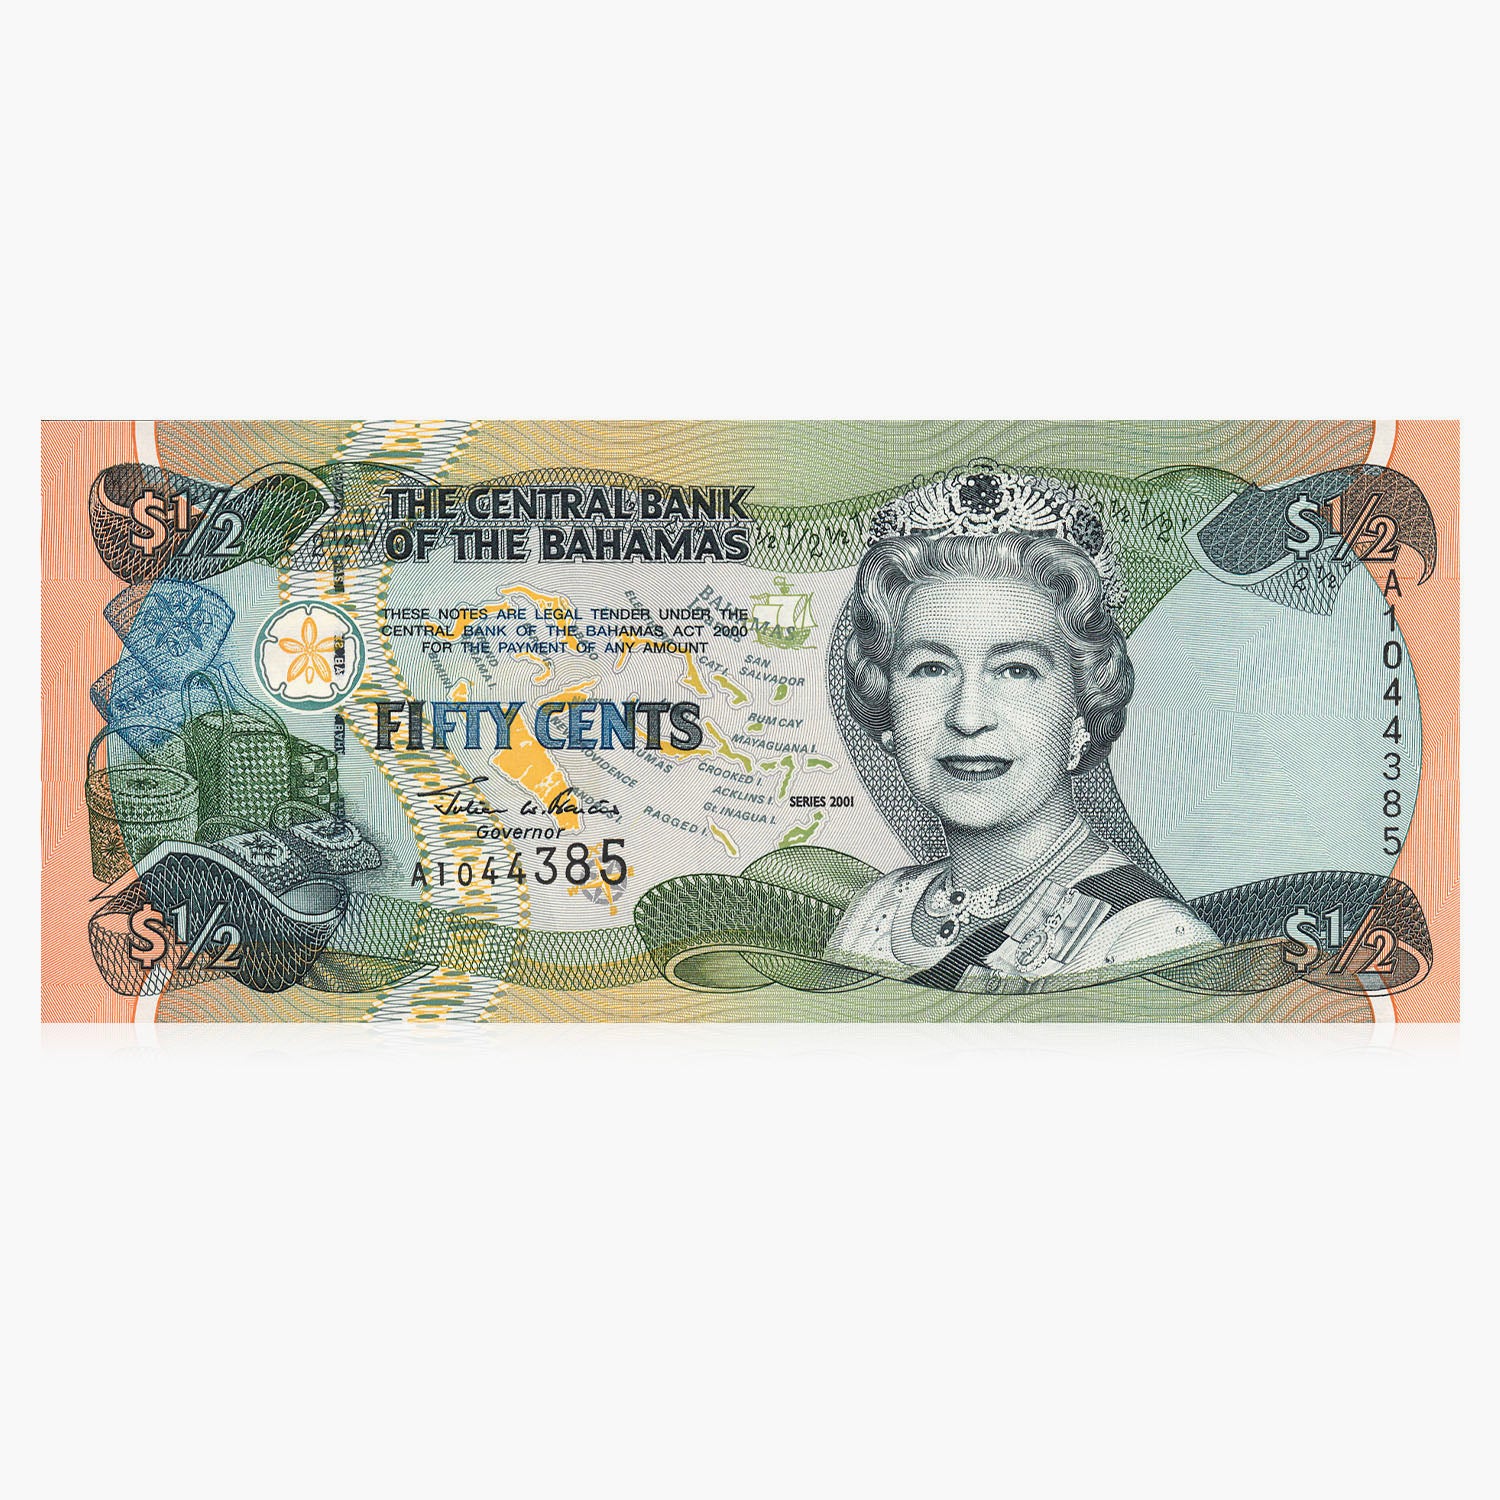 Billet de banque royal d'un demi-dollar de Sa Majesté la reine Elizabeth II